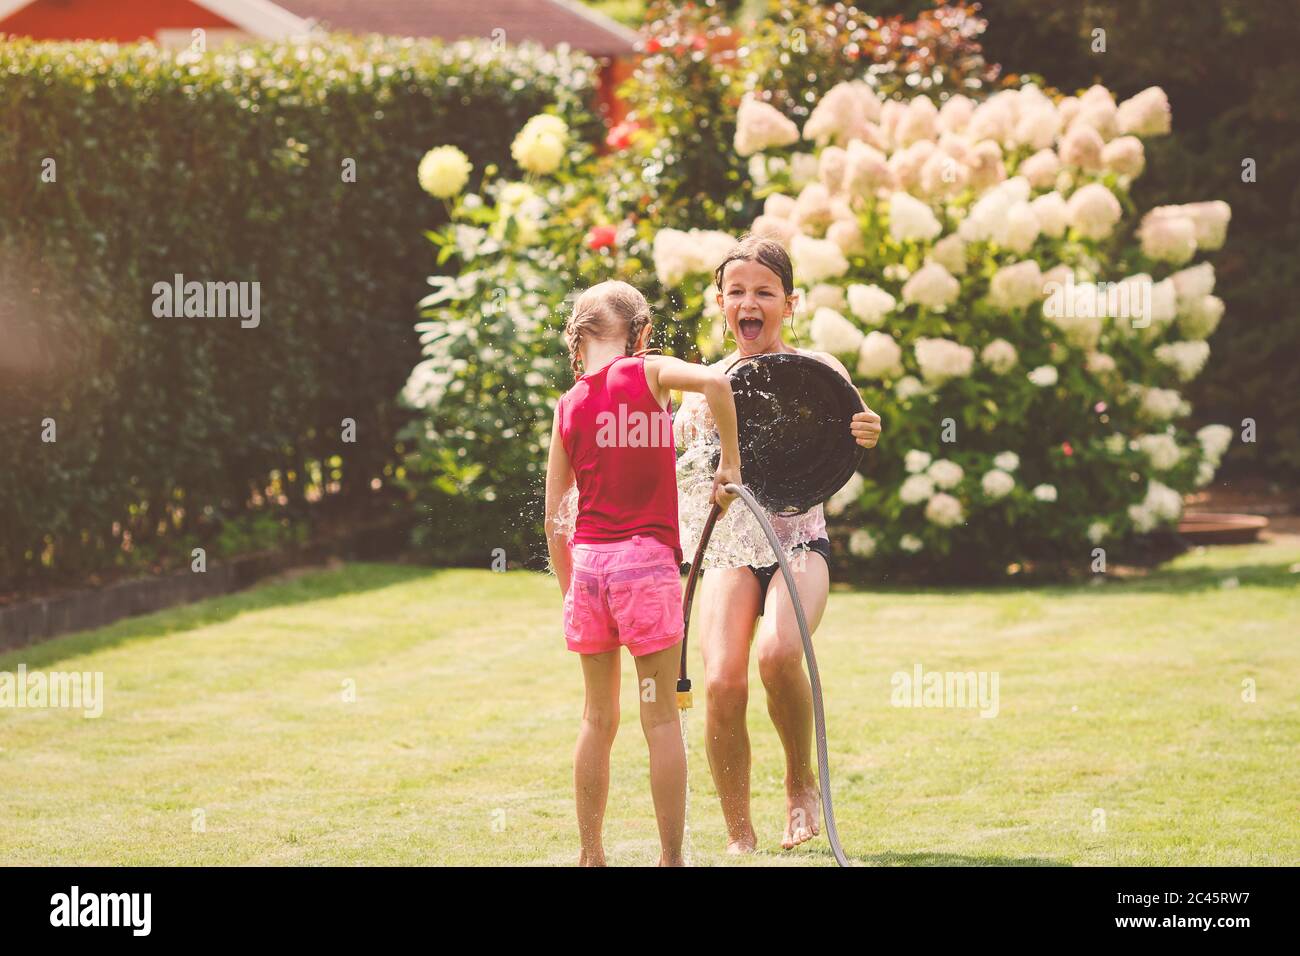 Zwei junge Mädchen spielen mit Wassereimer im Garten im Freien an einem sonnigen Sommertag Stockfoto